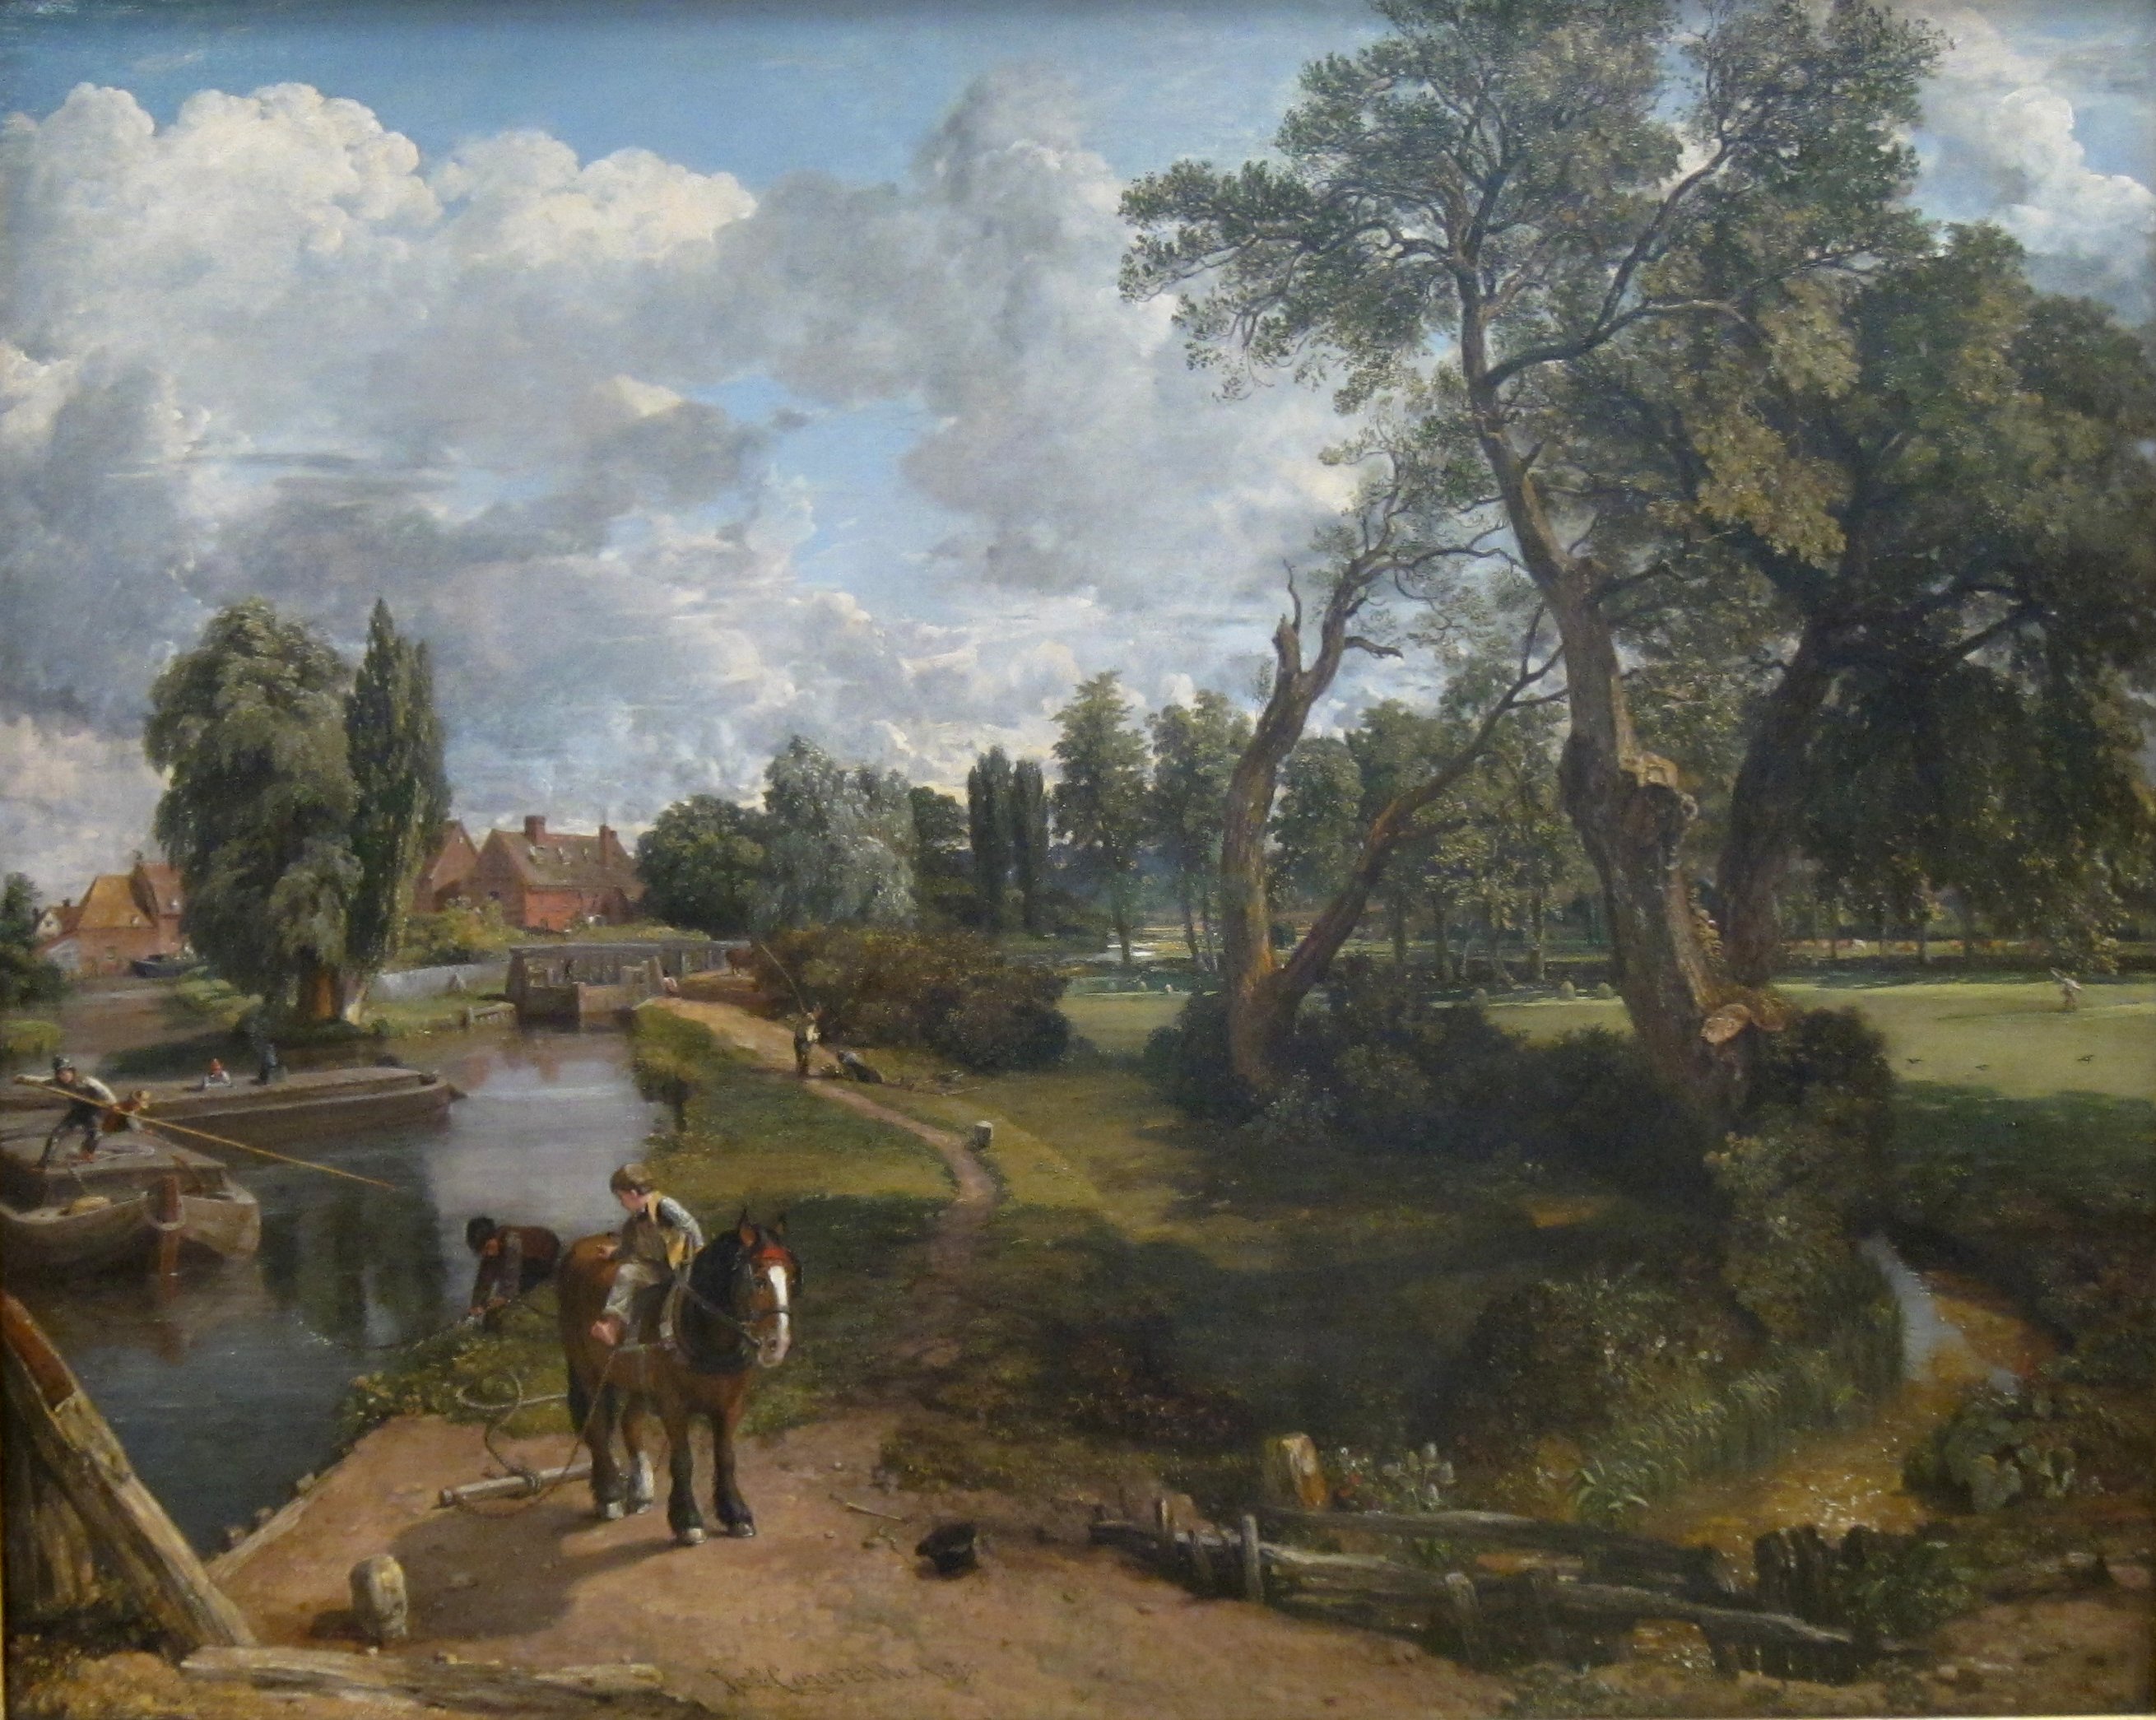 طاحونة فلاتفورد (مشهد لنهر صالح للملاحة) by John Constable - 1816-17 - 101.6 x 127 سم 